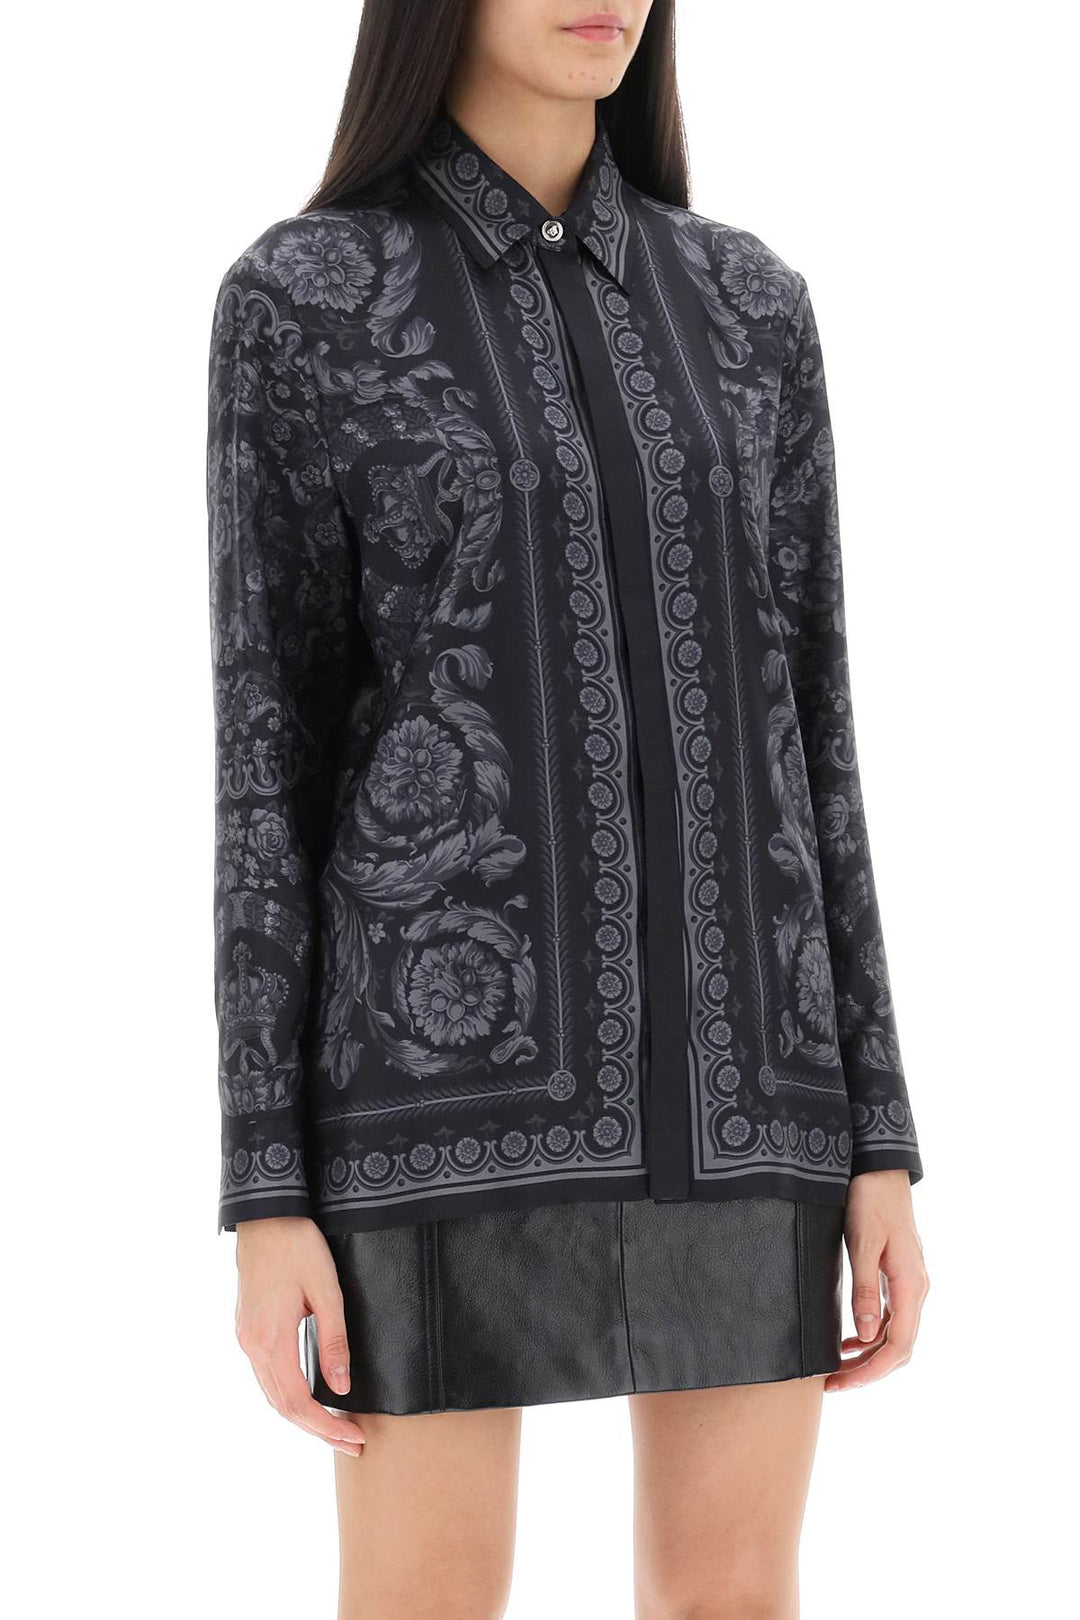 Camicia Barocco In Twill Di Seta - Versace - Donna